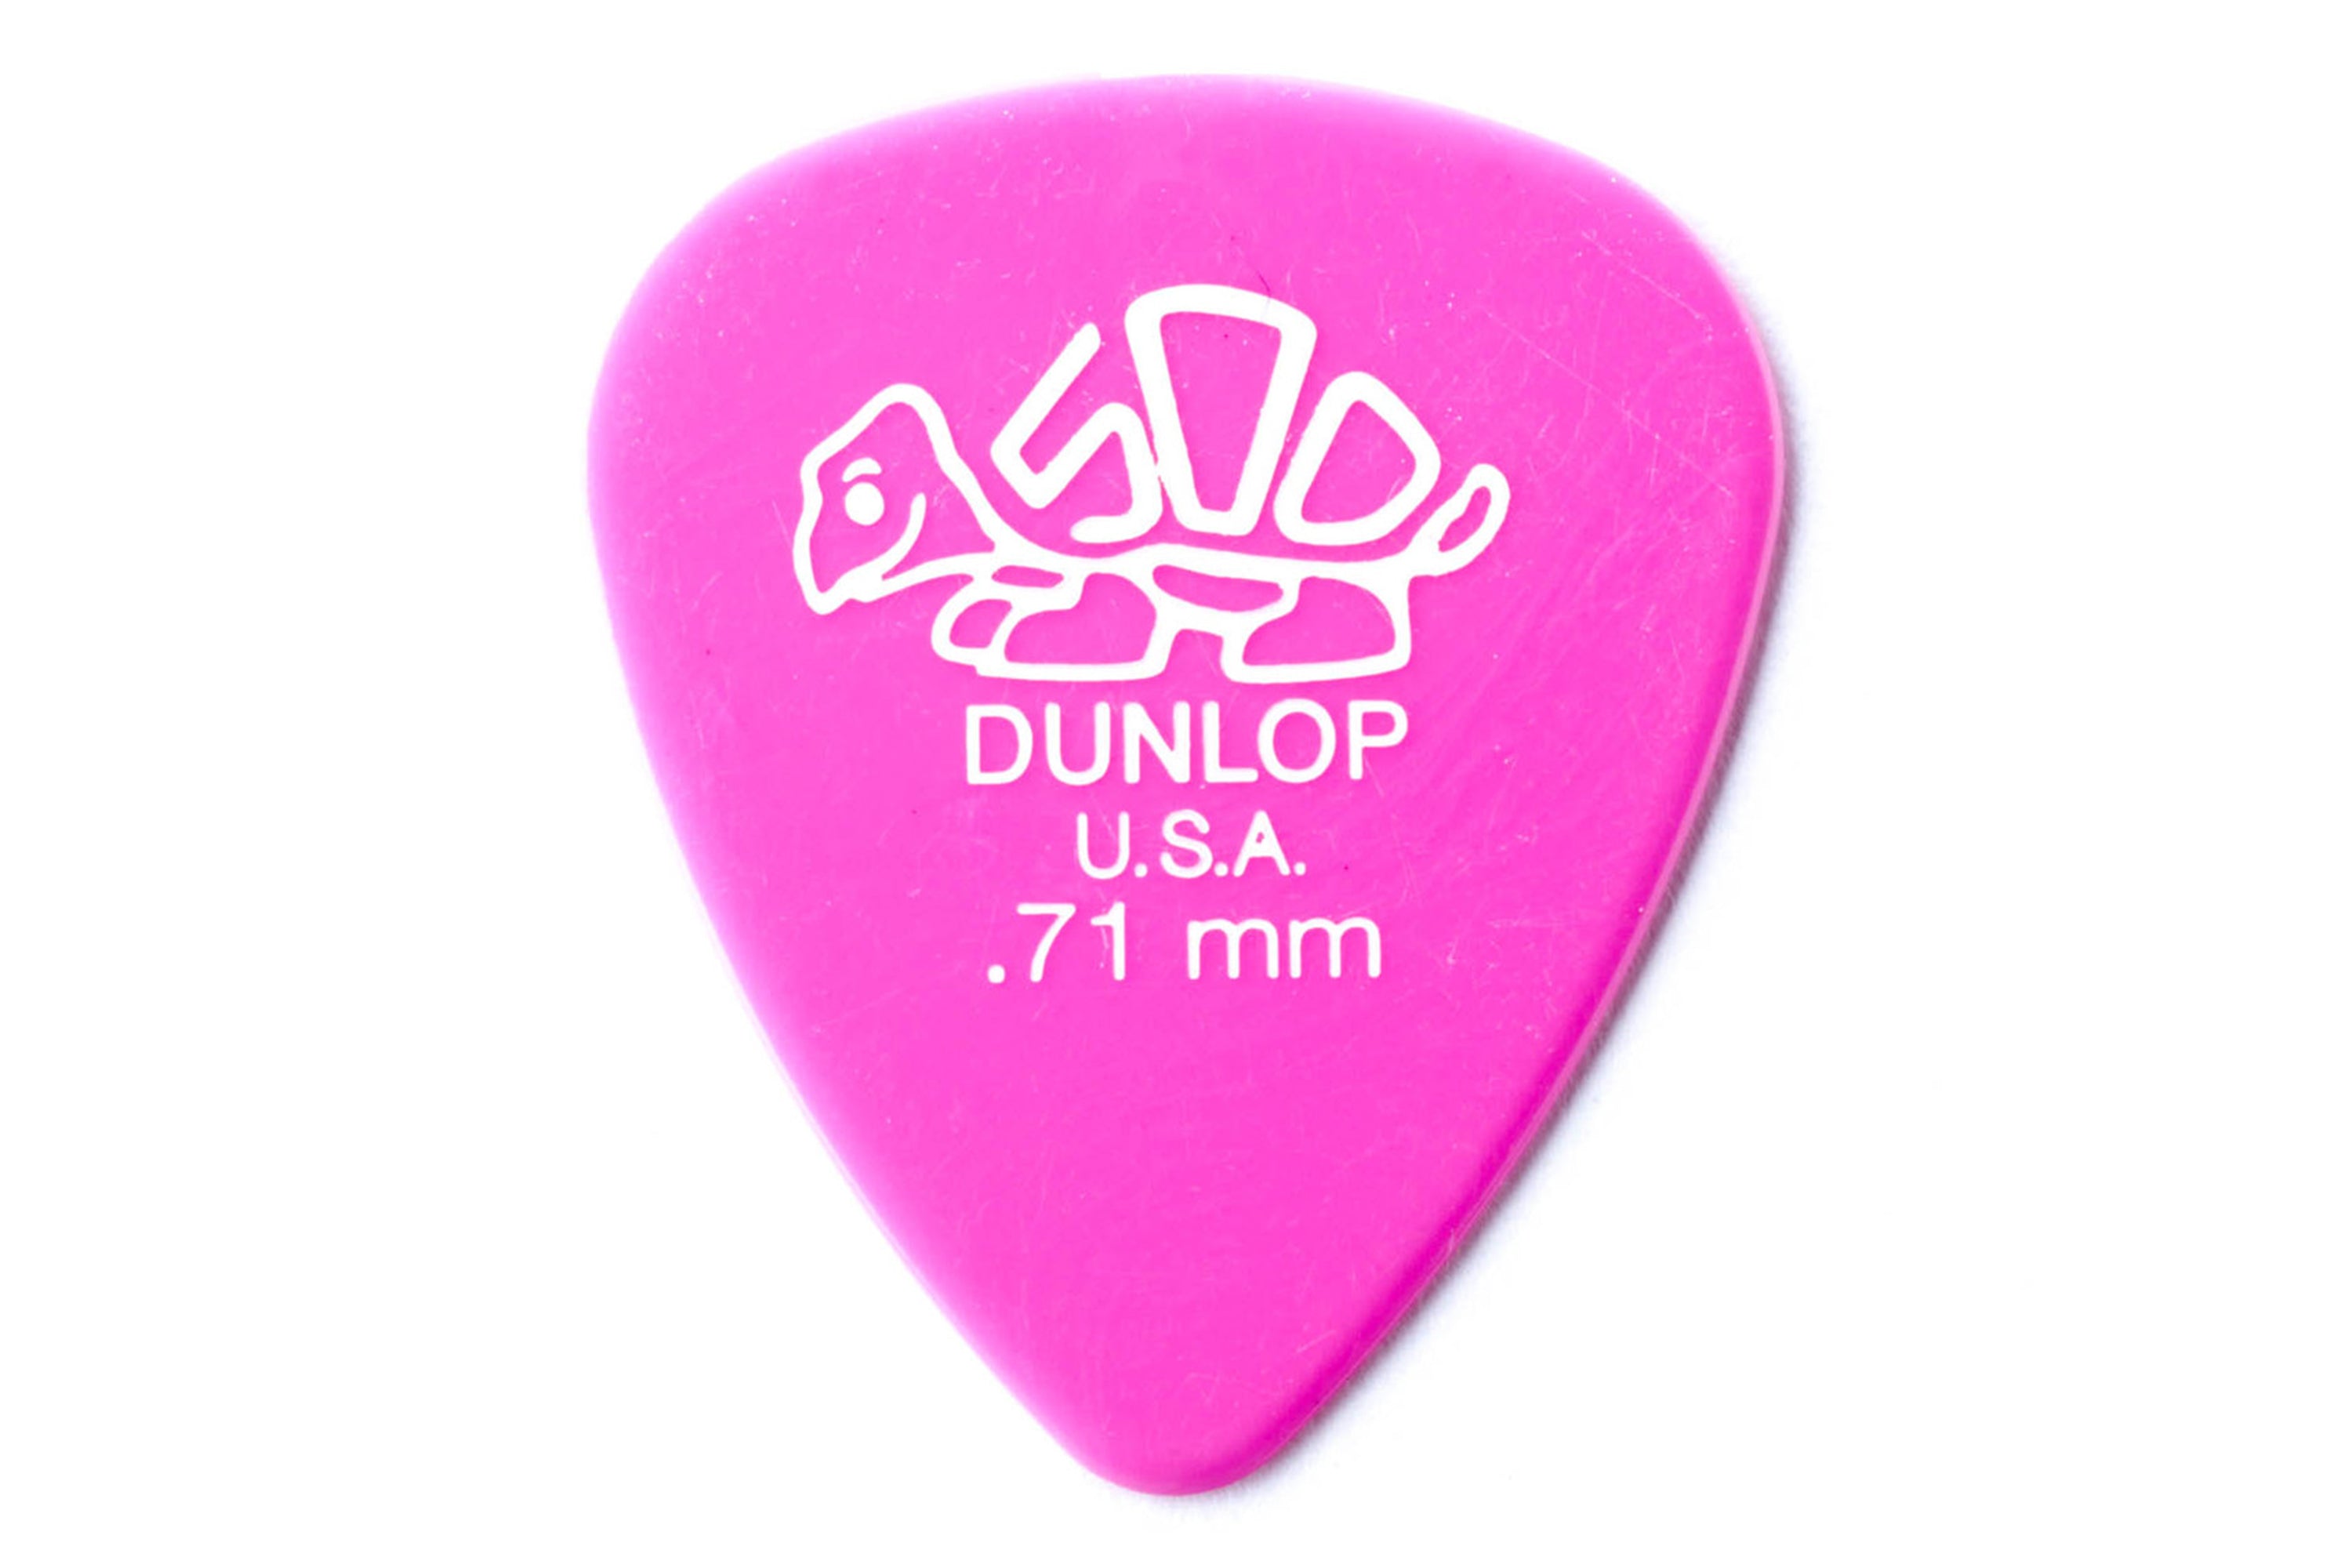 Dunlop Delrin 500 Standard .71mm Medium Pink Guitar & Ukulele Pick - SINGLE PICK